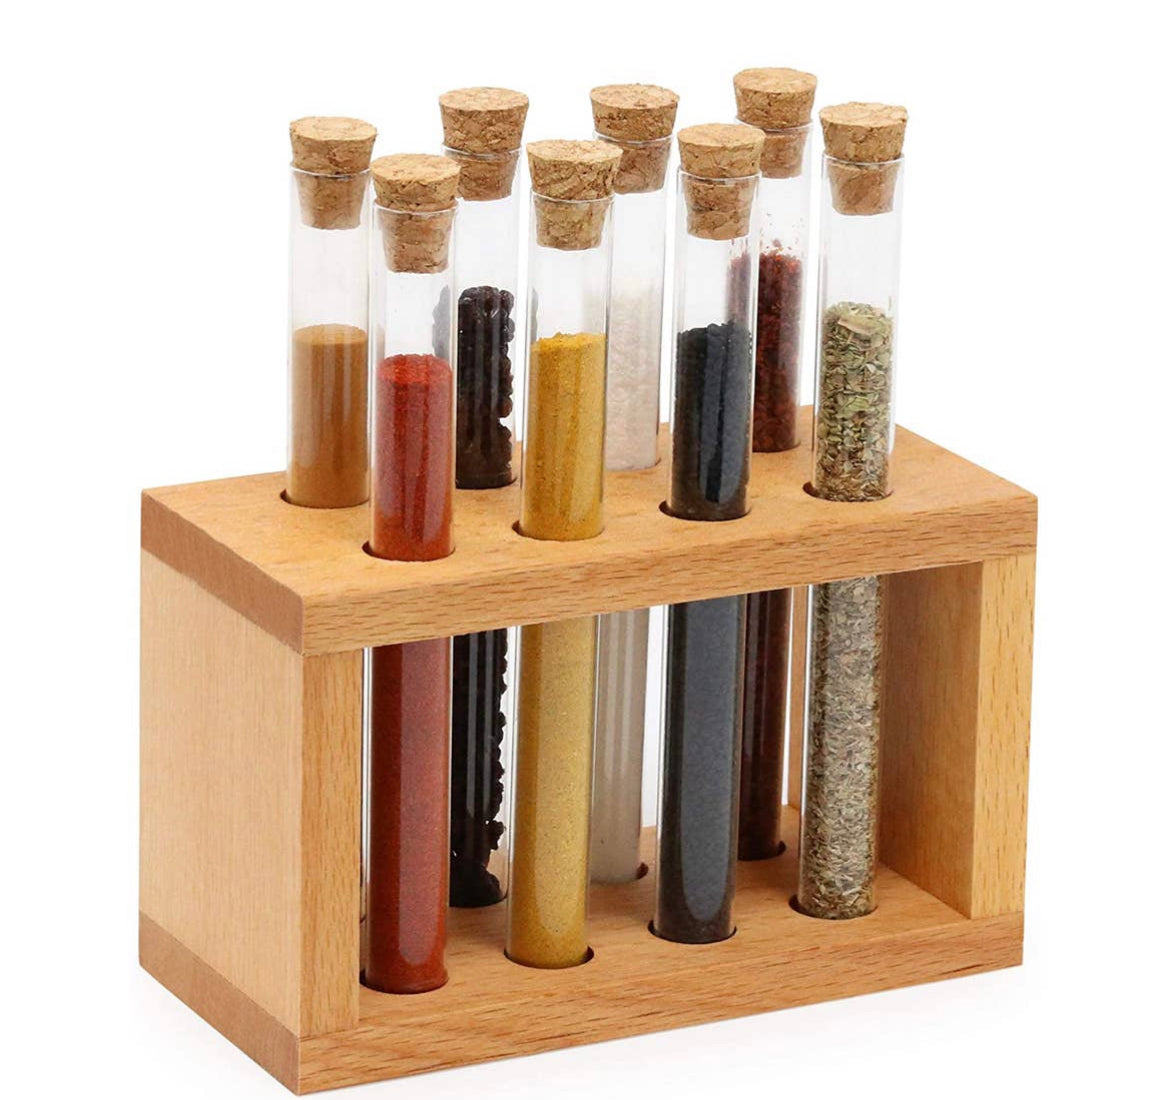 Kopie van Houten kruidenrek 8 soorten kruiden & keuze – Andalus Spices